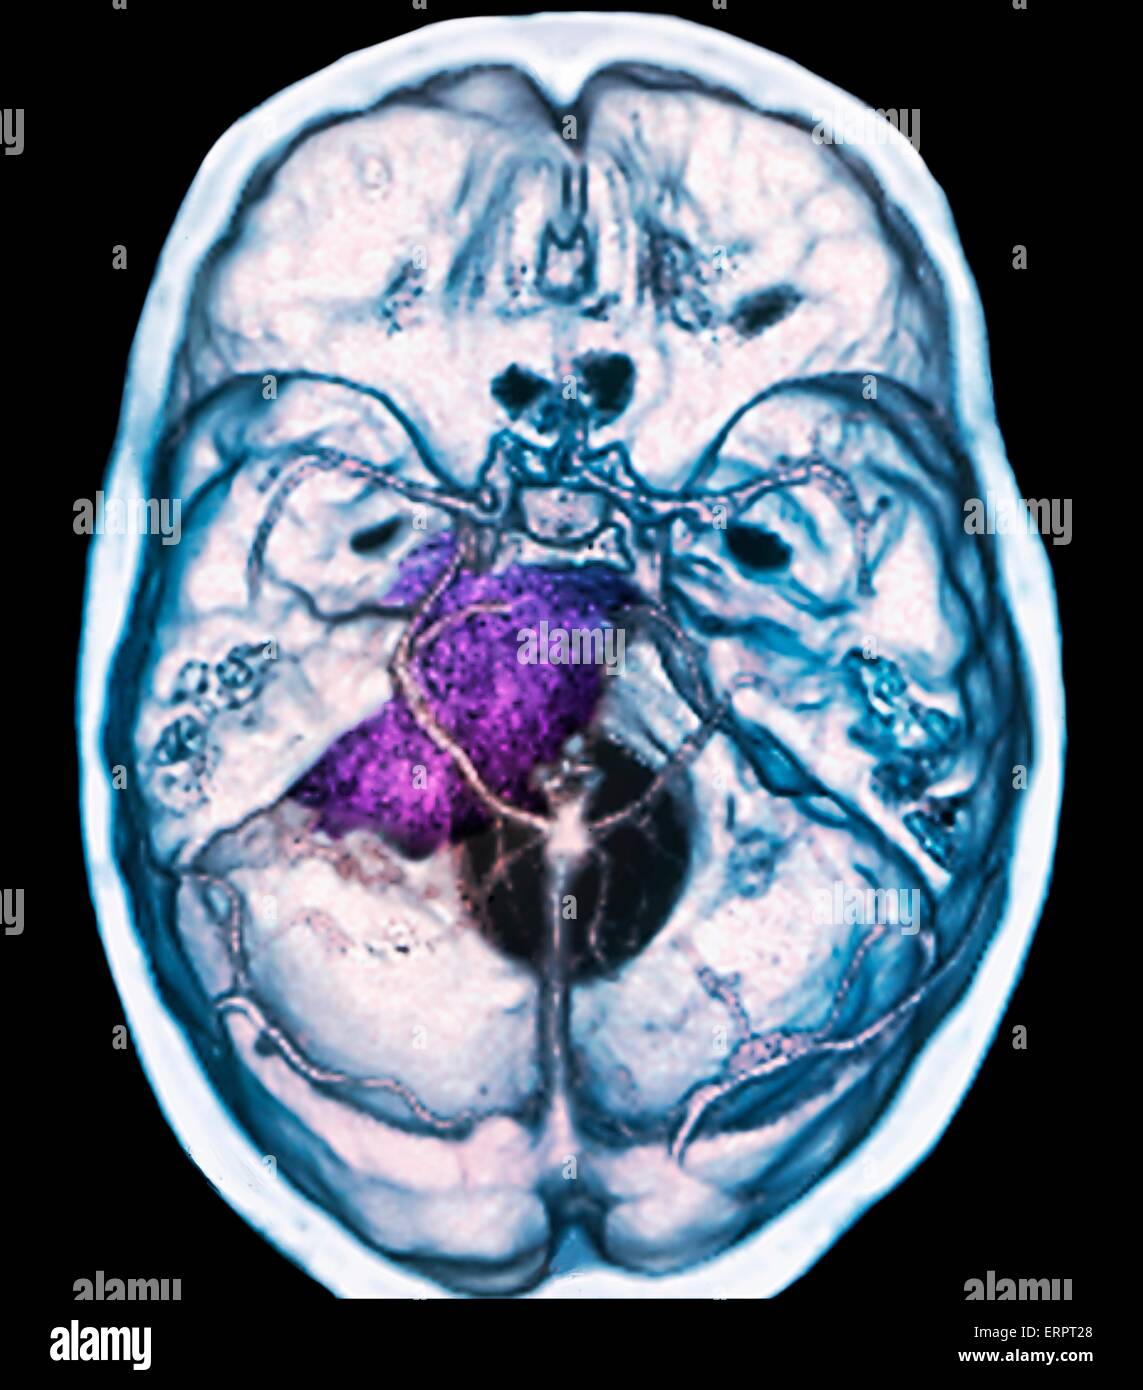 Tumeur bénigne au cerveau. La tomodensitométrie (CT de couleur) du cerveau d'un patient de 48 ans avec un méningiome (violet). Il s'agit d'une bénigne (non cancéreuse) tumeur qui découle de la méninges, les membranes qui entourent le cerveau. Banque D'Images